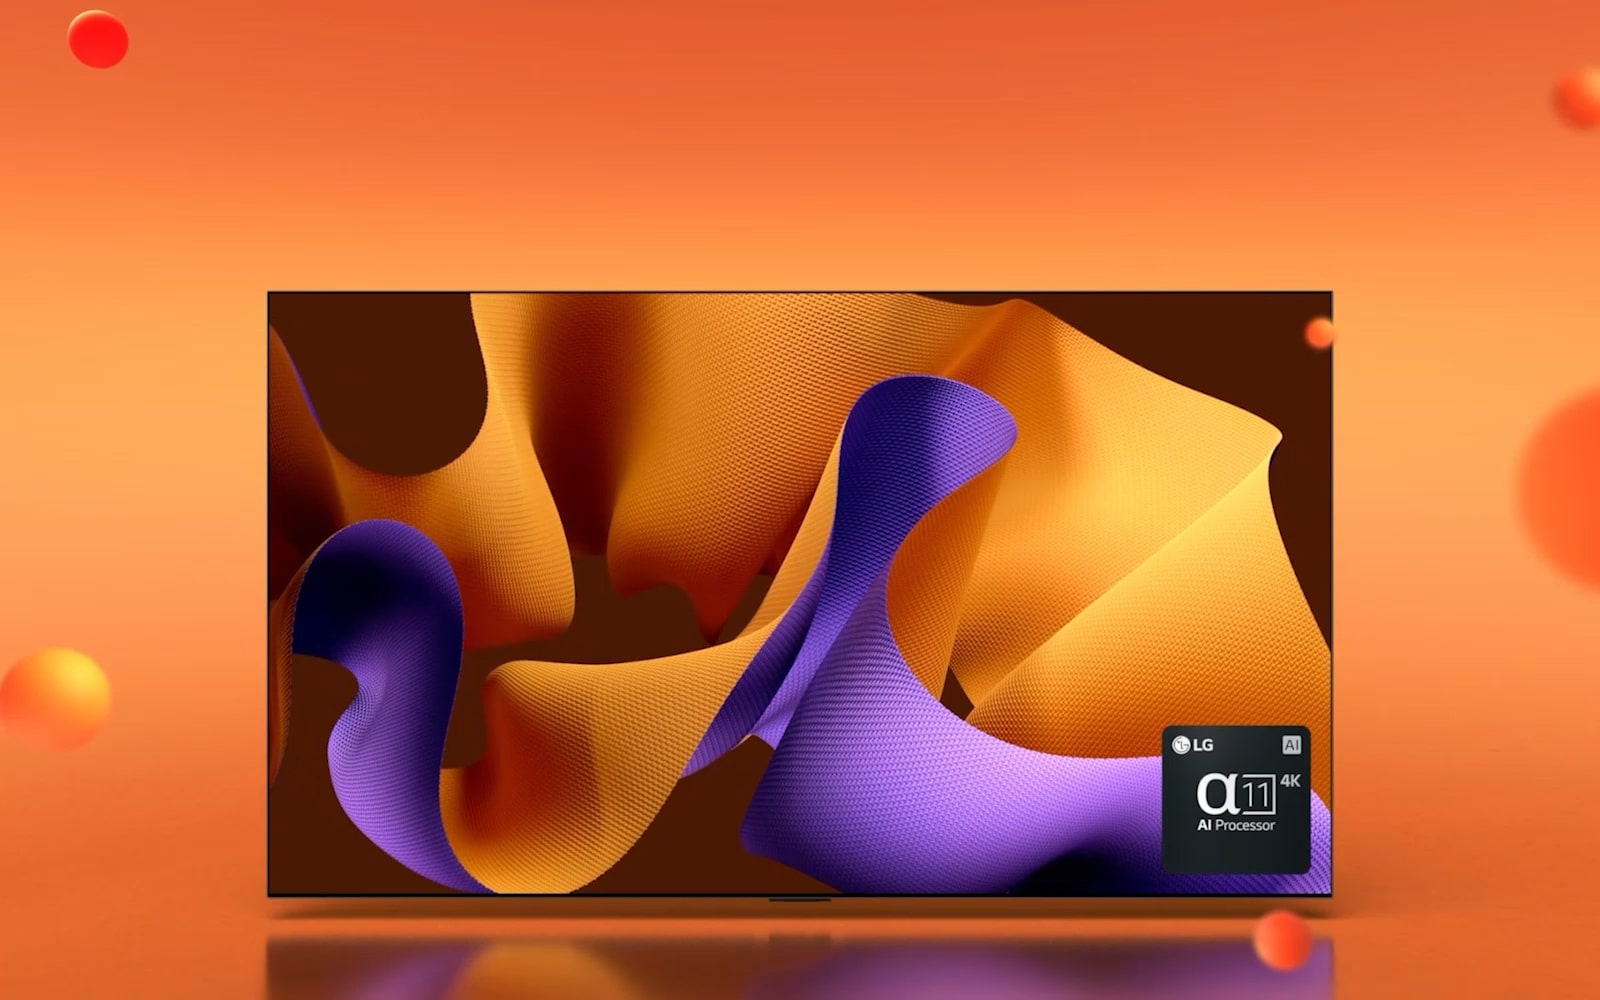 LG OLED G4 pod kotom 45 stopinj v desno z vijolično in oranžno abstraktno umetnino na zaslonu na oranžnem ozadju s 3D kroglami. OLED TV se nato obrne naprej. Spodaj desno je logotip procesorja LG alpha 11 AI.